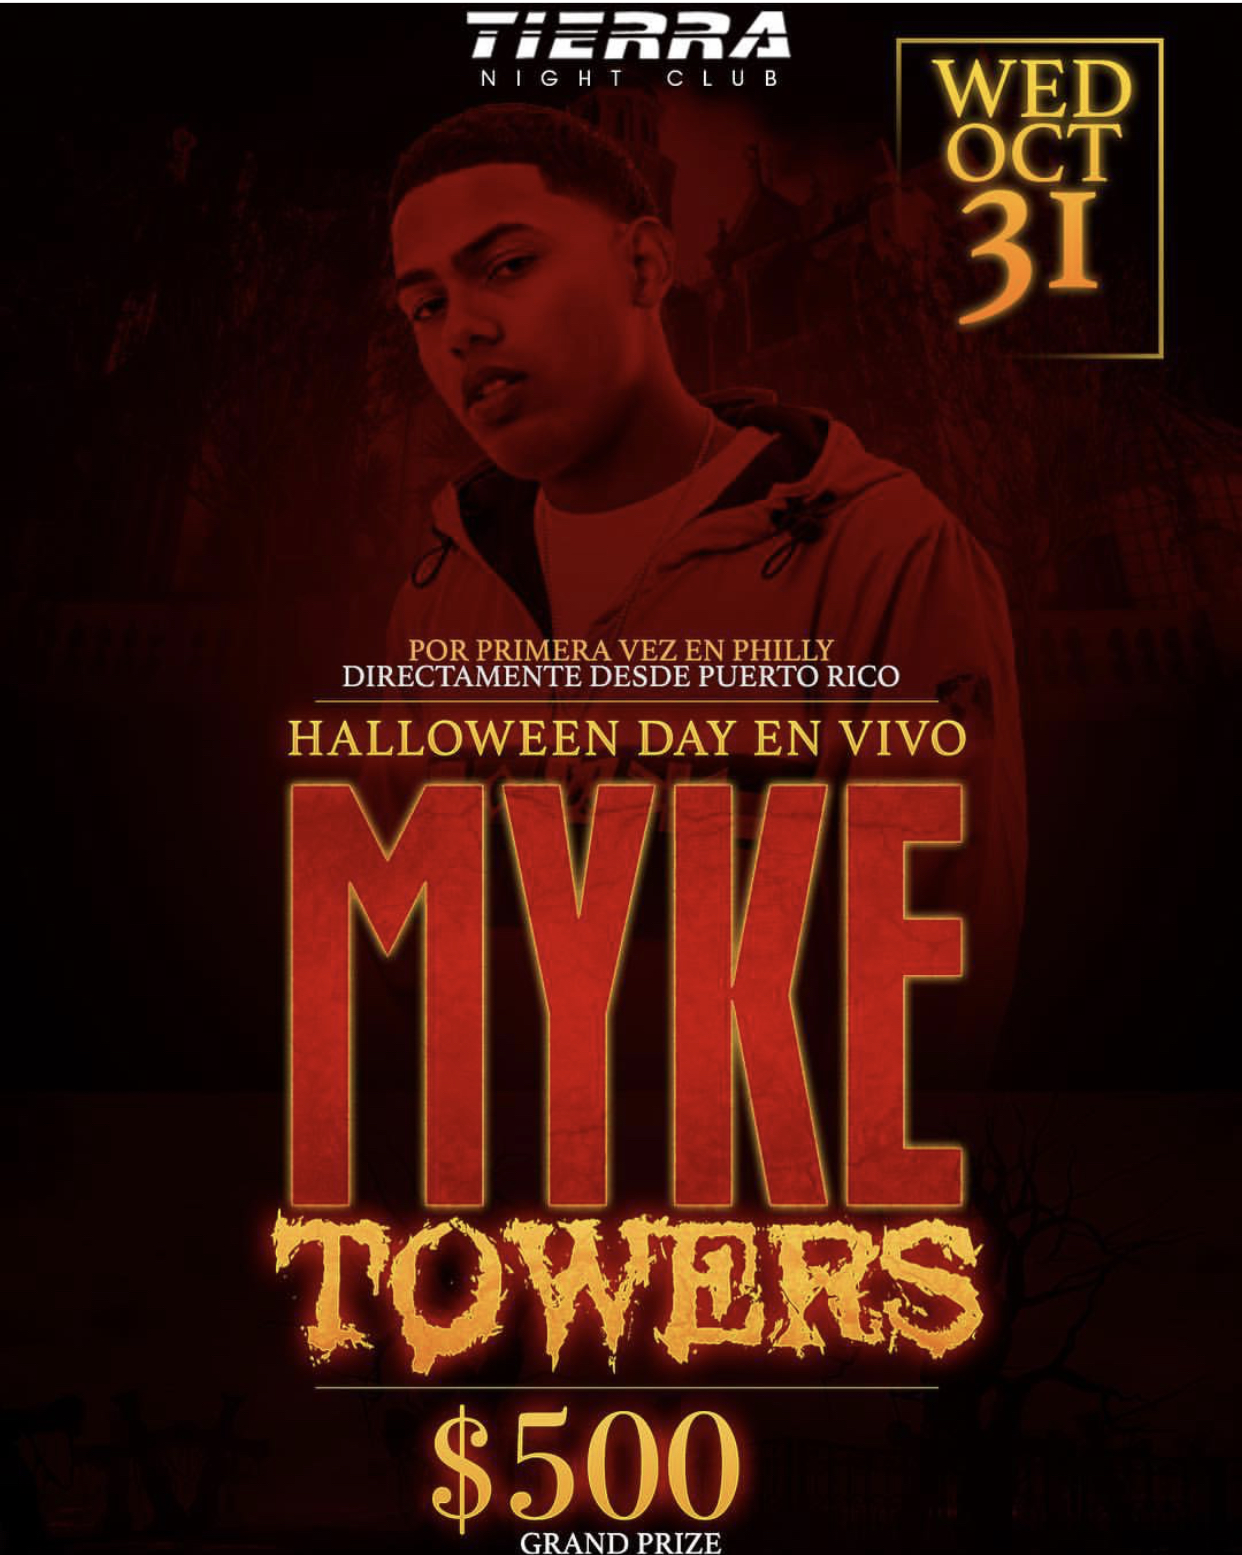 Halloween Day Mike Towers En Vivo Tierra Nightclub